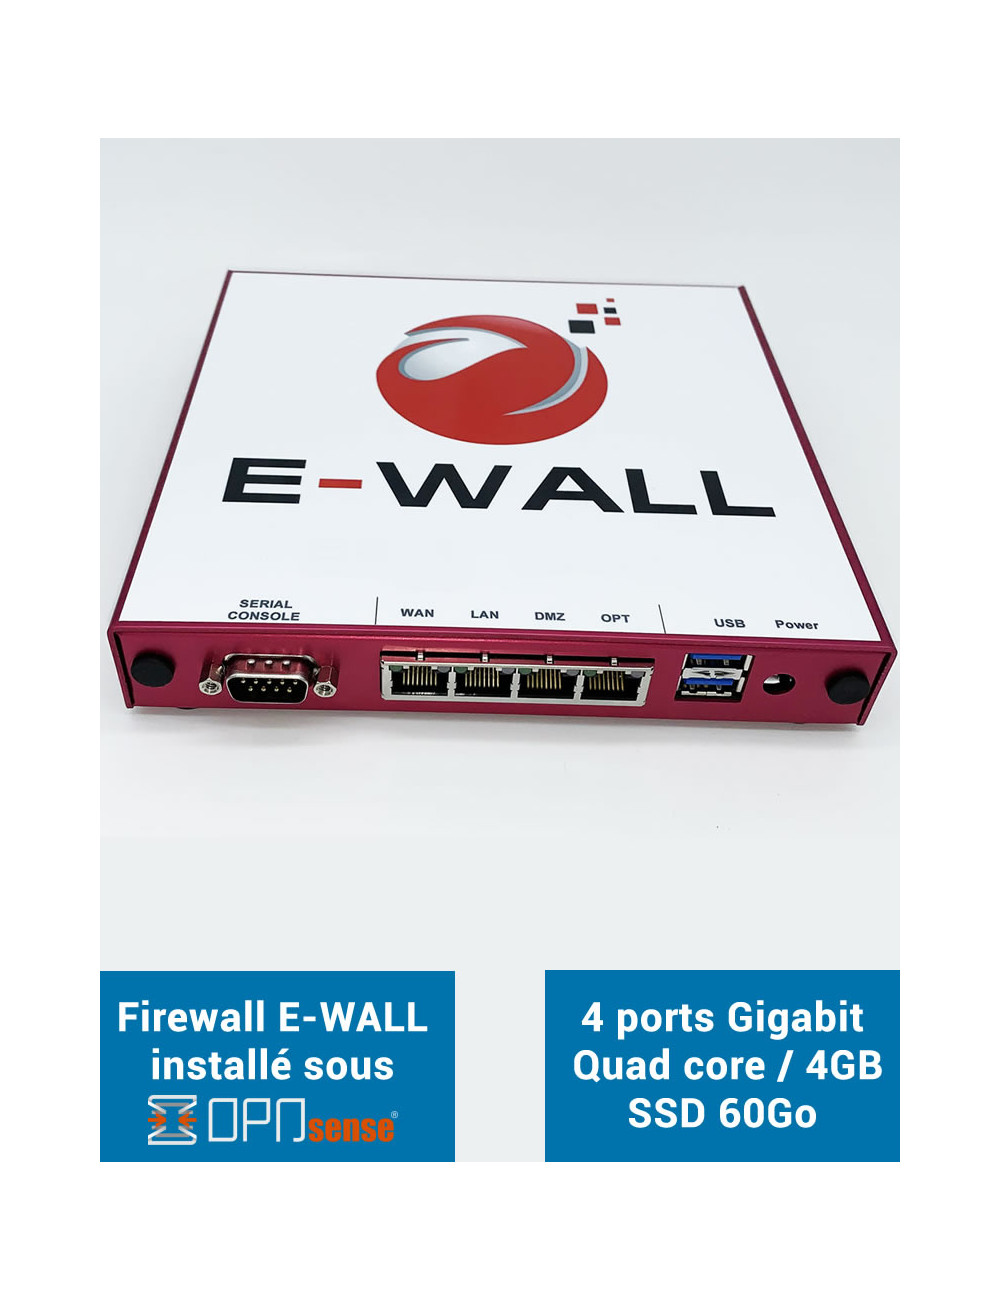 E-WALL SYNOLOGY Servidor NAS - Copia de seguridad 300 GB - 1 año